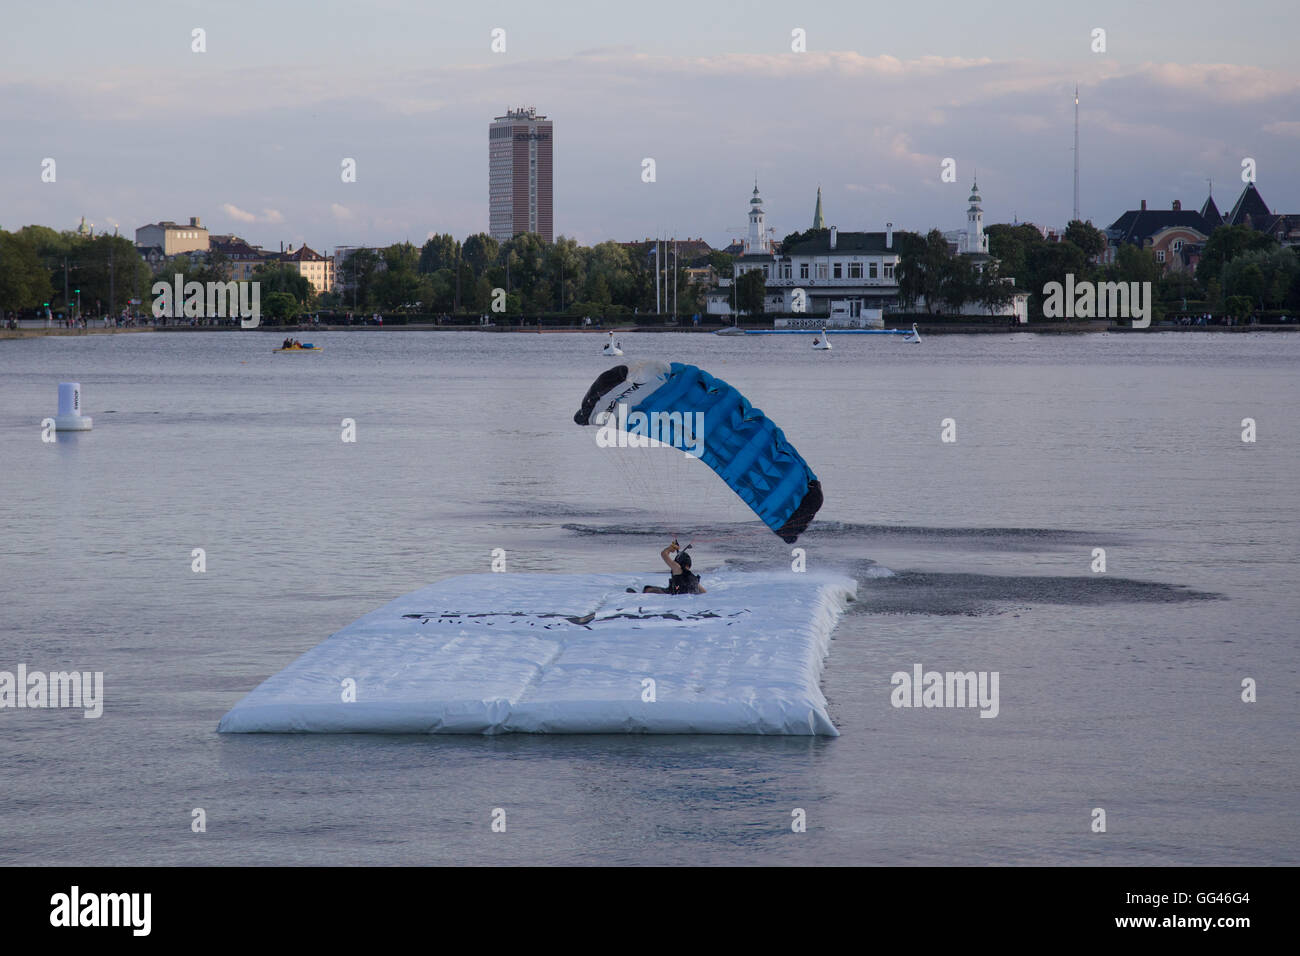 Kopenhagen, Dänemark - 30. Juli 2016: Ein Fallschirmspringer landen auf einem Ponton in einem See für die Kopenhagen-Schlag-Herausforderung. Stockfoto